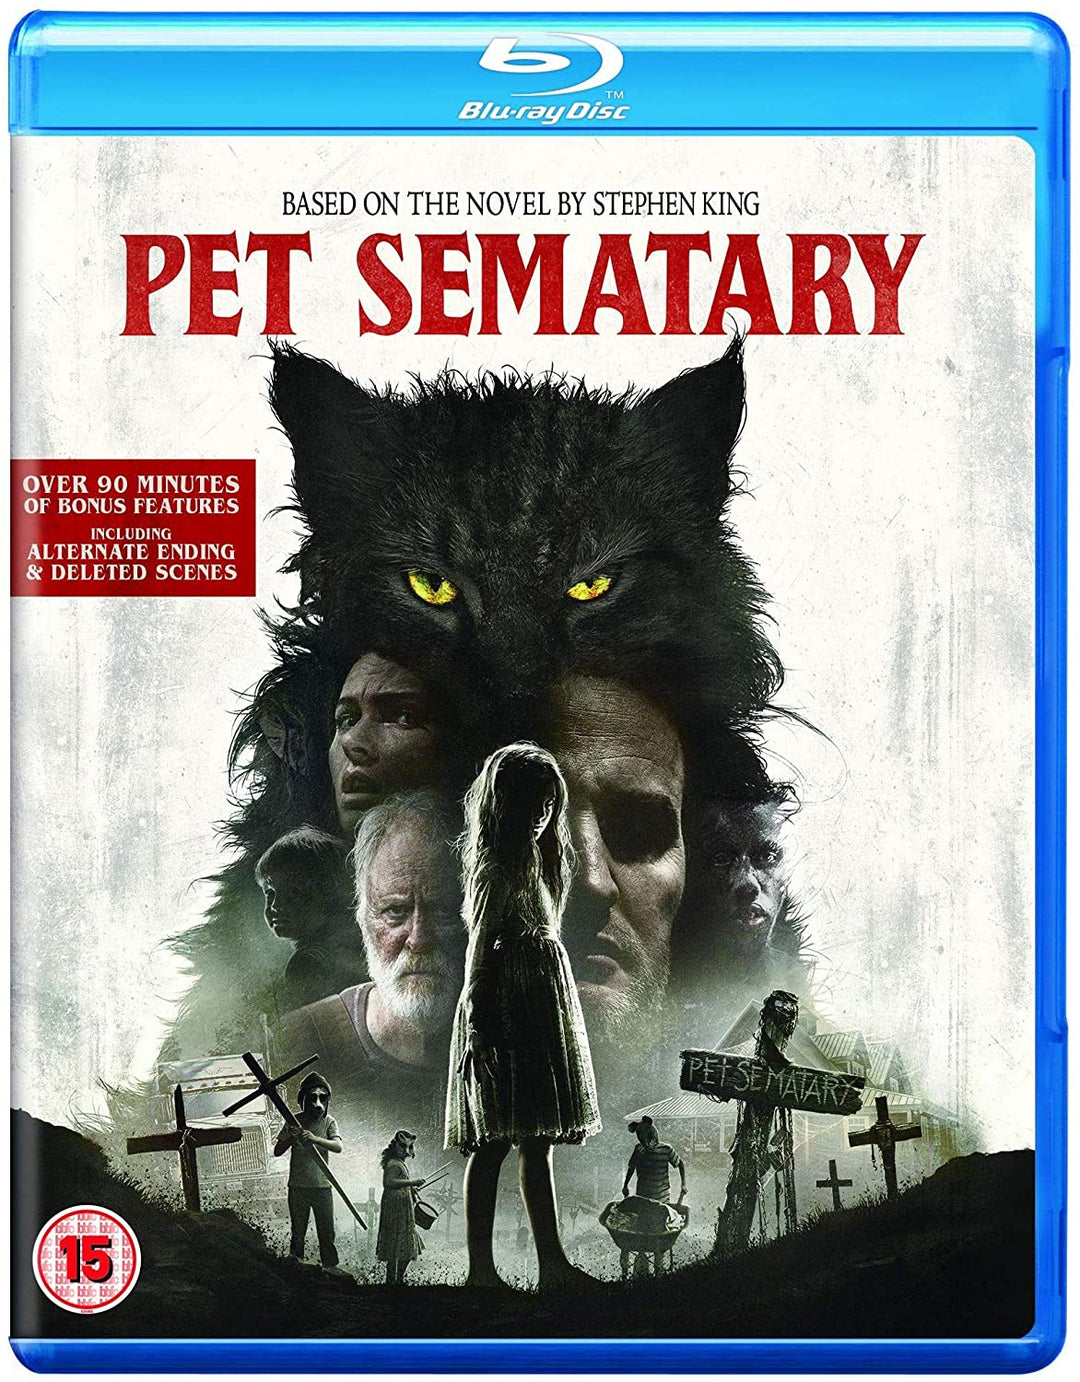 Pet Sematary – Horror/Thriller [Blu-ray]